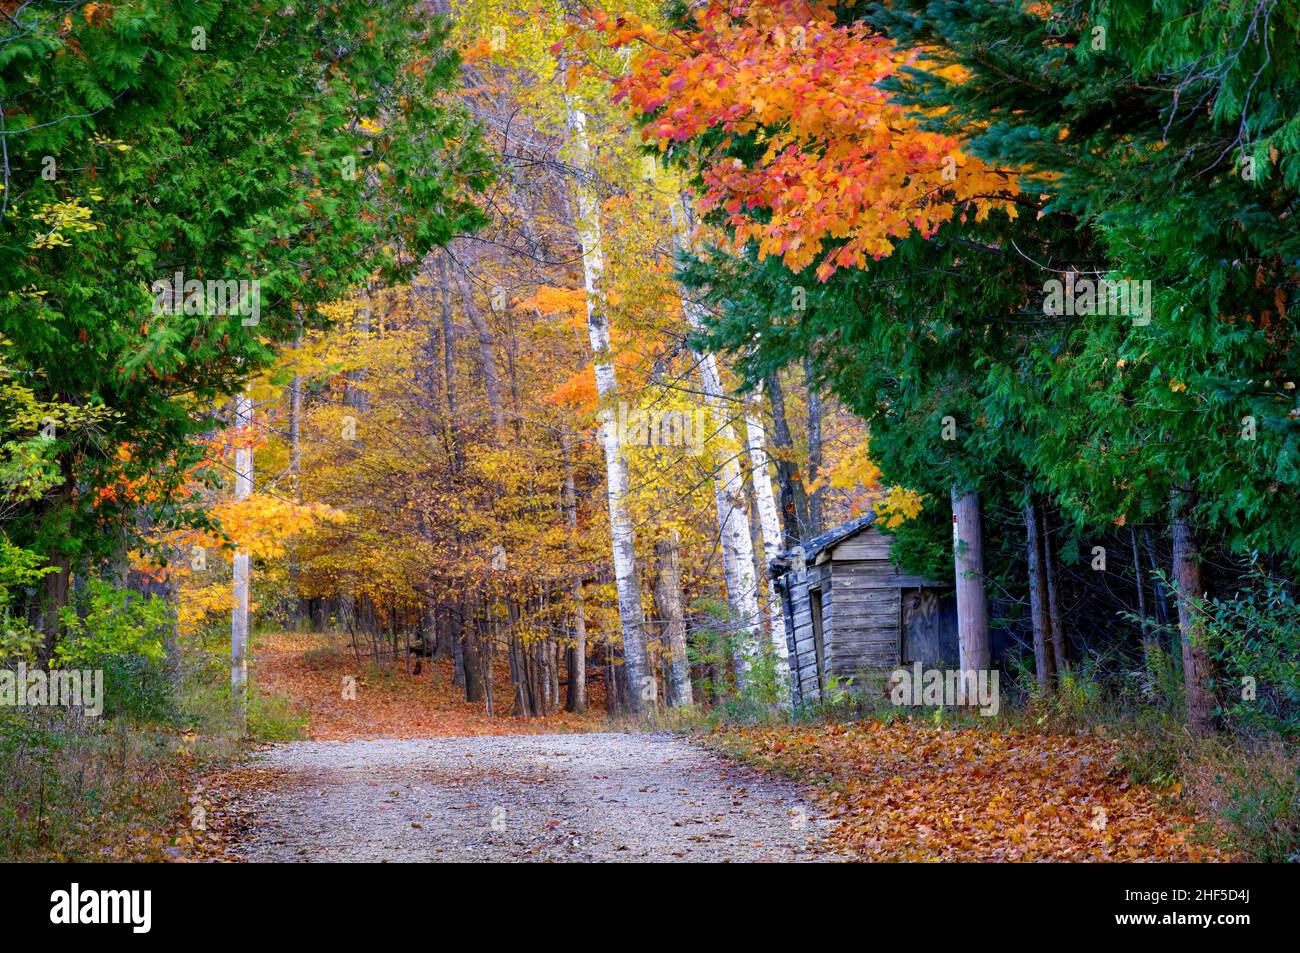 Un esempio di esposizione annuale a colori autunnali che si verifica ogni autunno a Door County Wisconsin, una delle principali destinazioni turistiche. Foto Stock